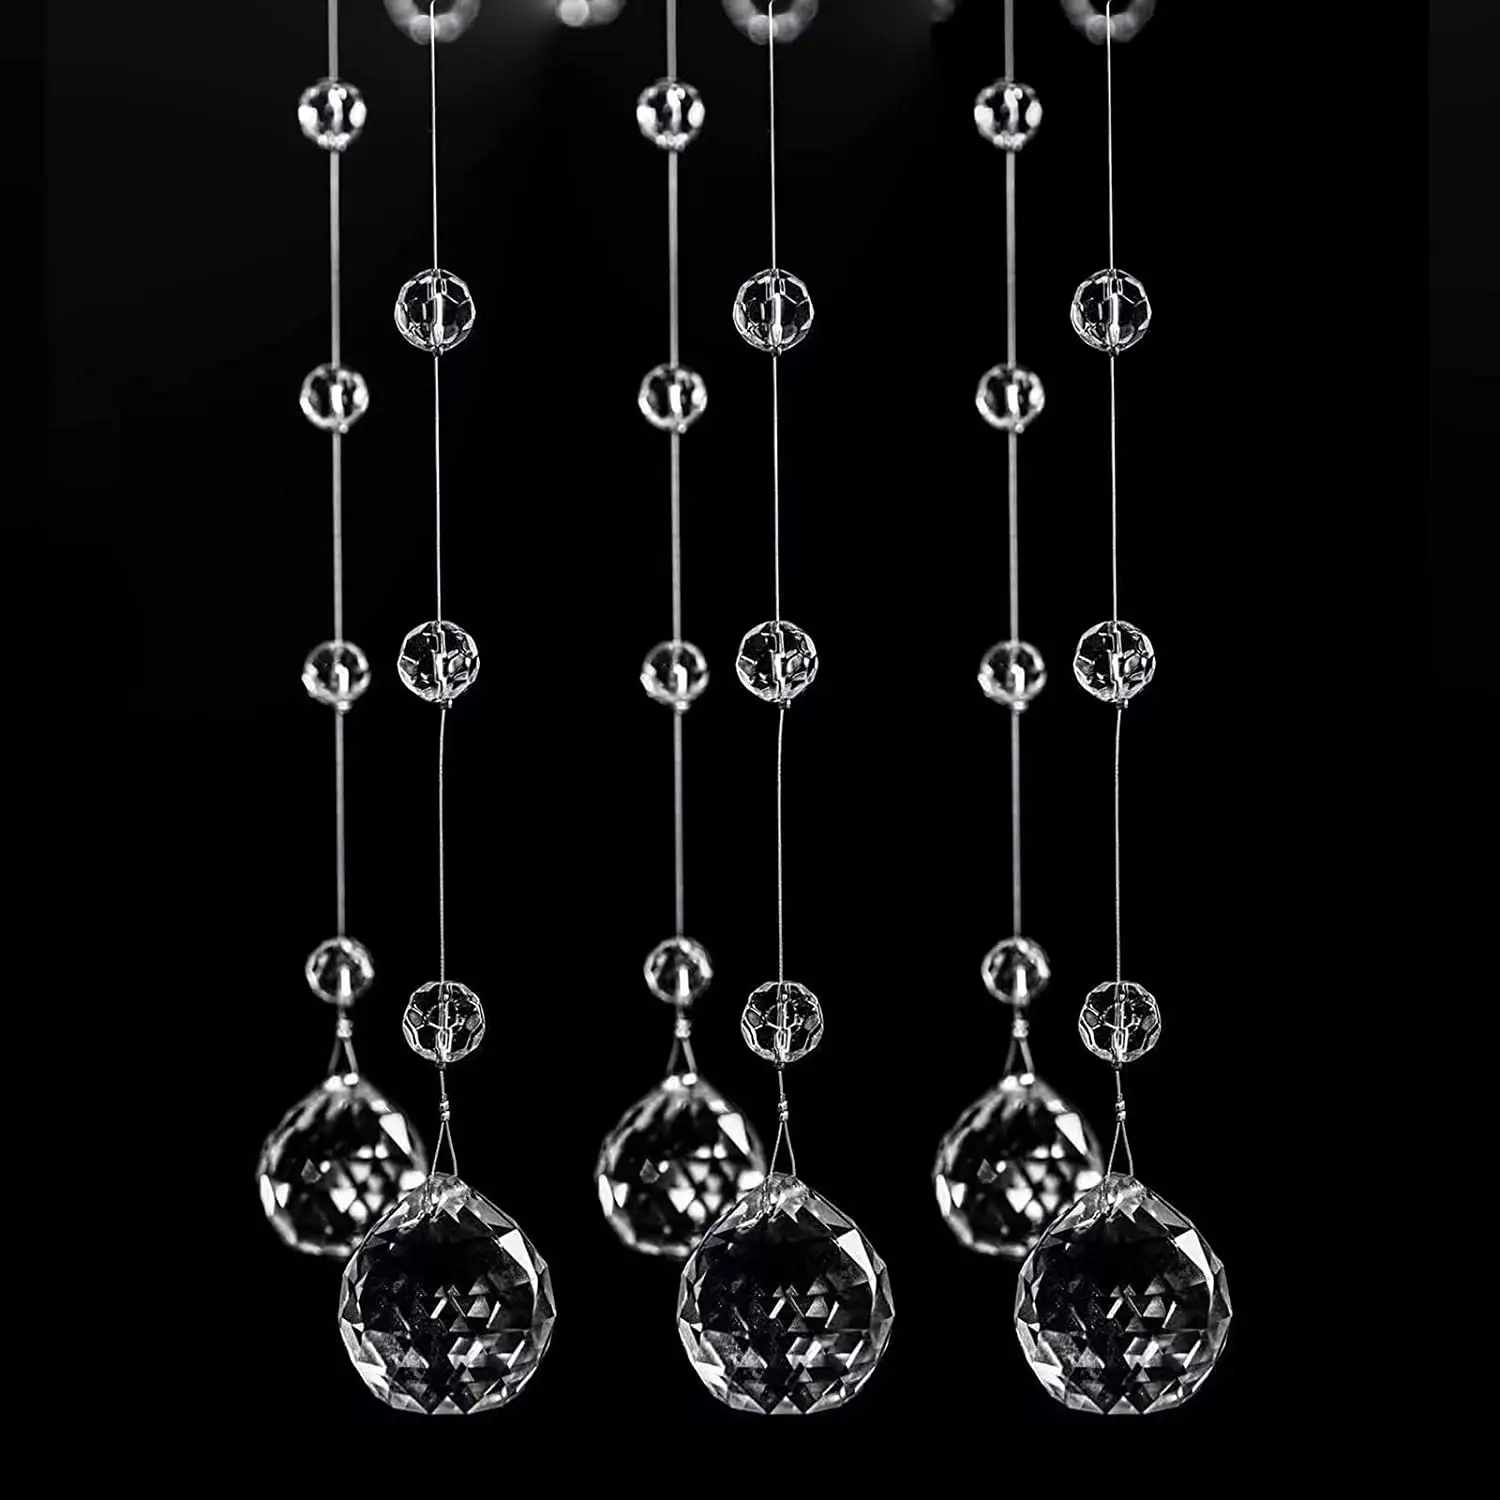 Factory Direct K9 Kristall kranz Schnur Hochzeit Deckende ko ration 30mm transparente Glas perle Garland Line Vorhang